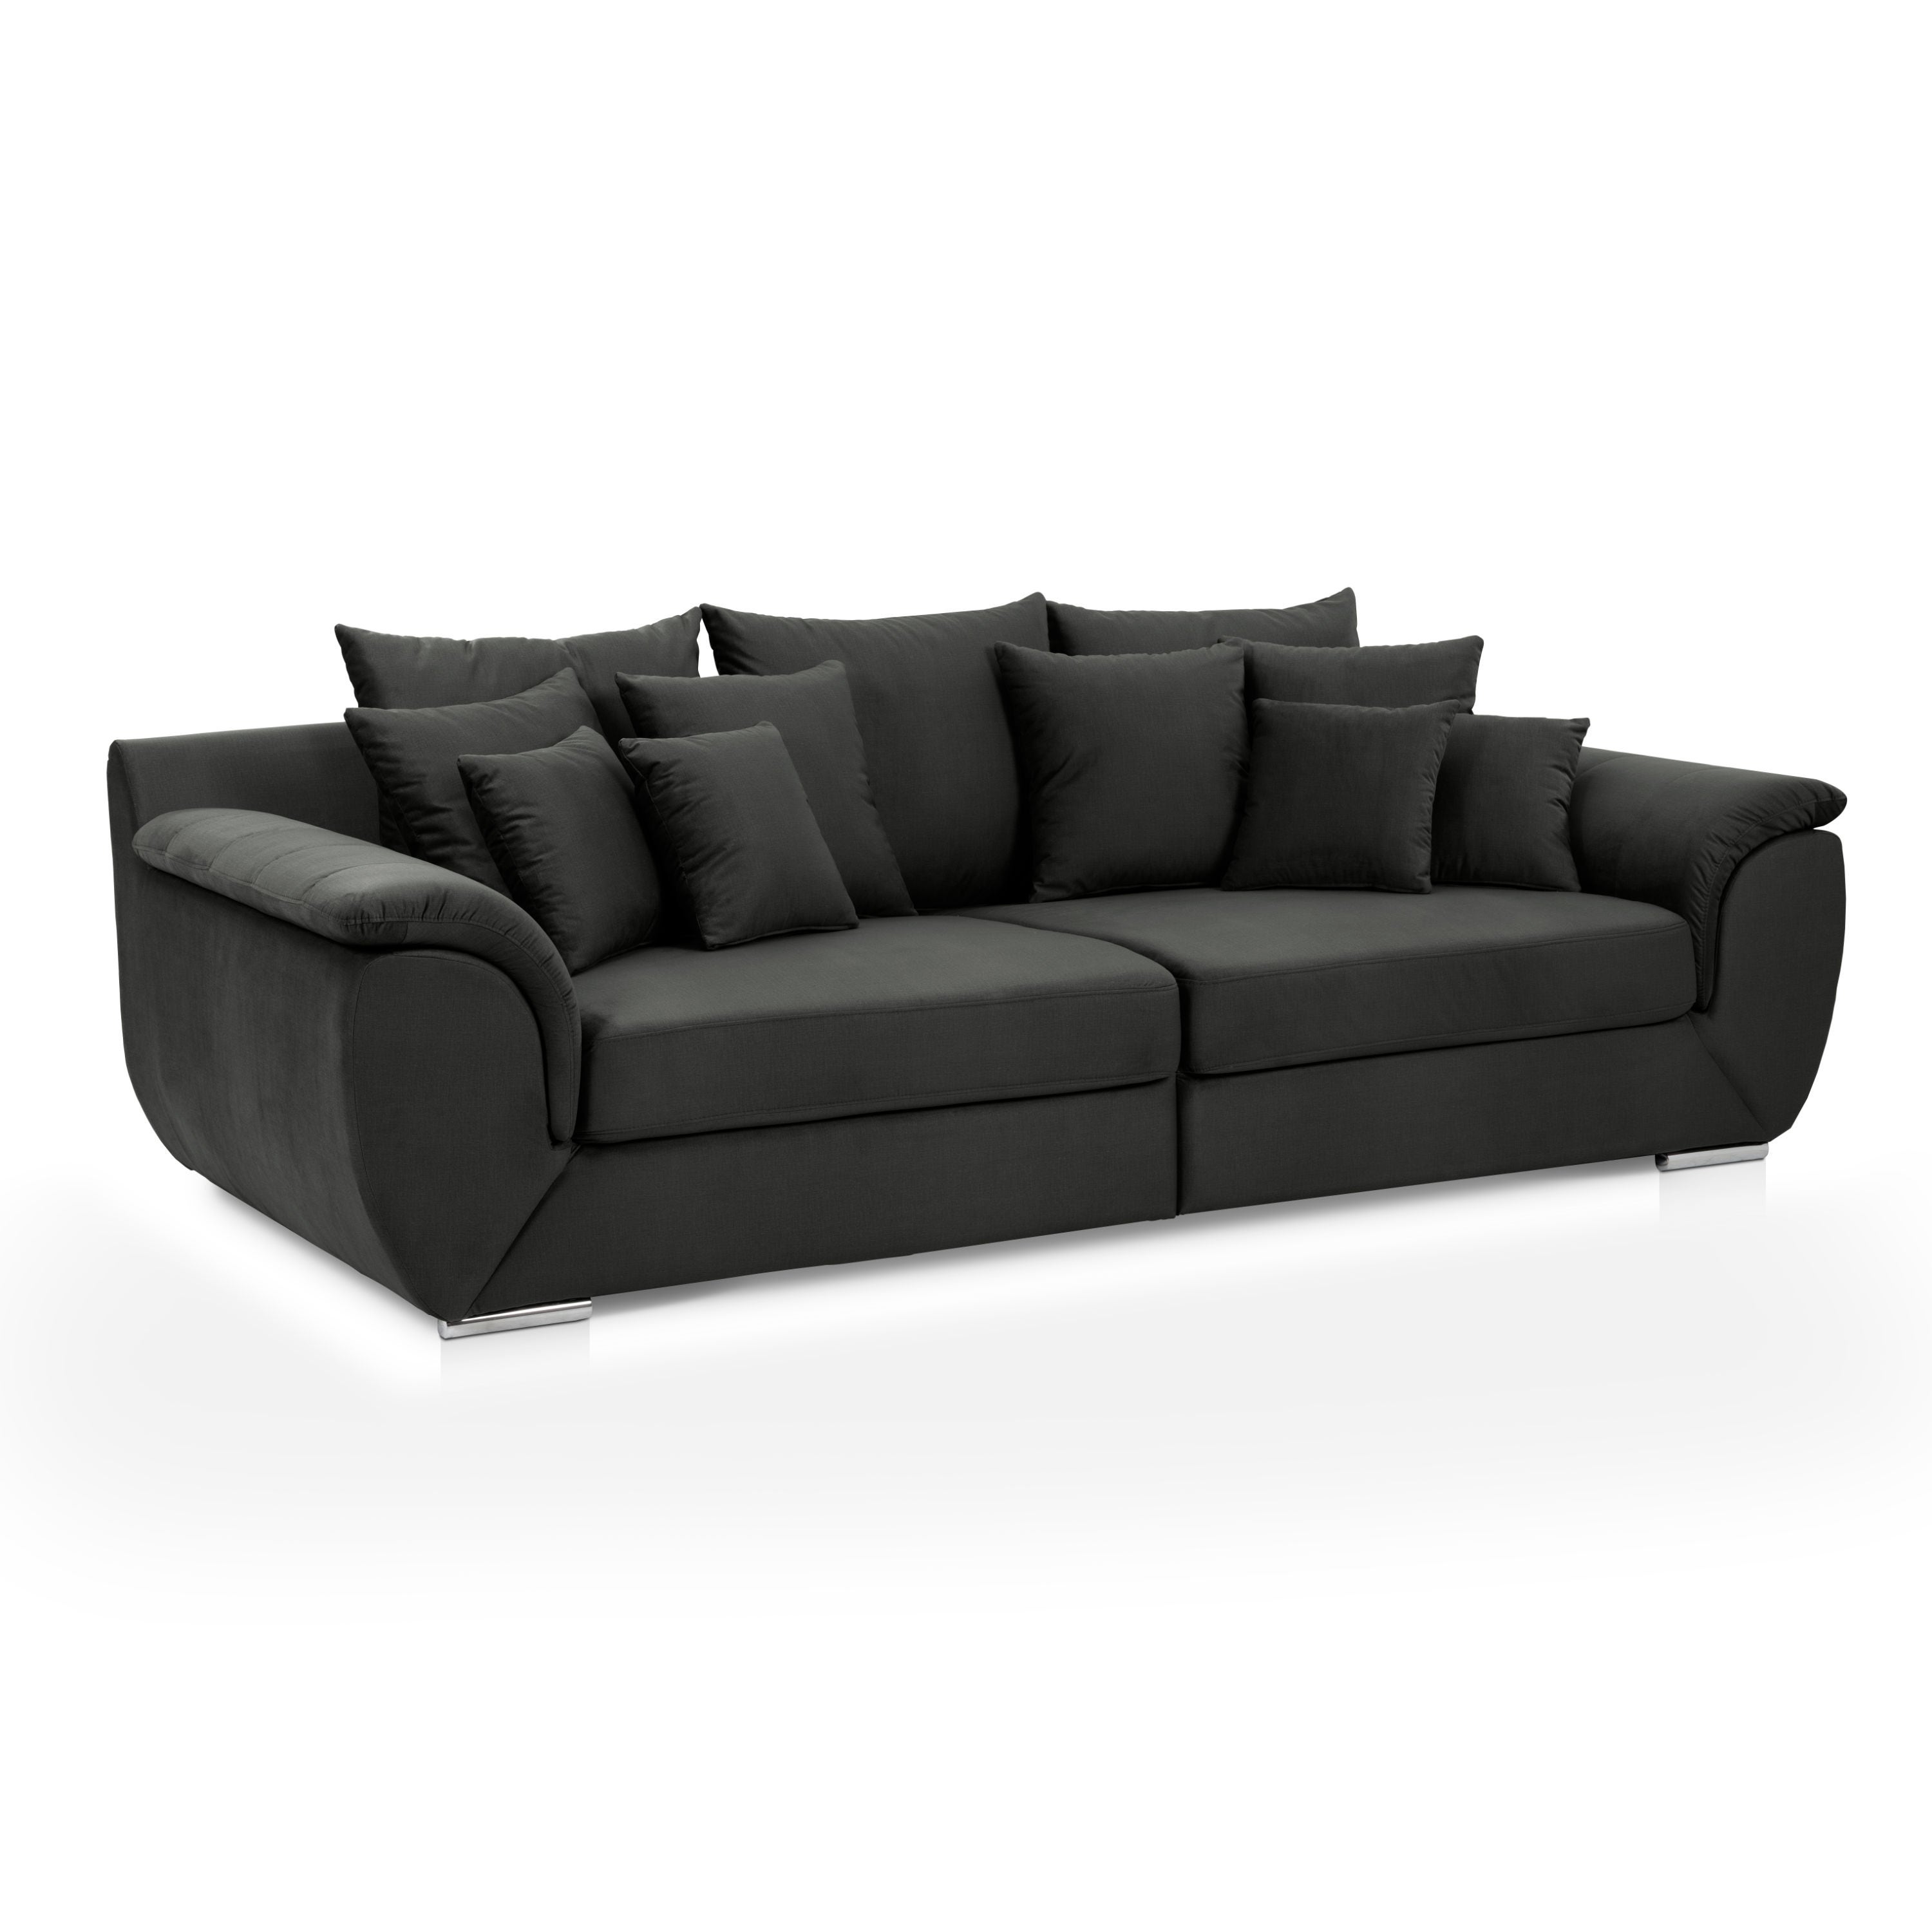 Canapea fixa 3 locuri MM608, gri antracit, 270 x 130 x 93 cm, 2C